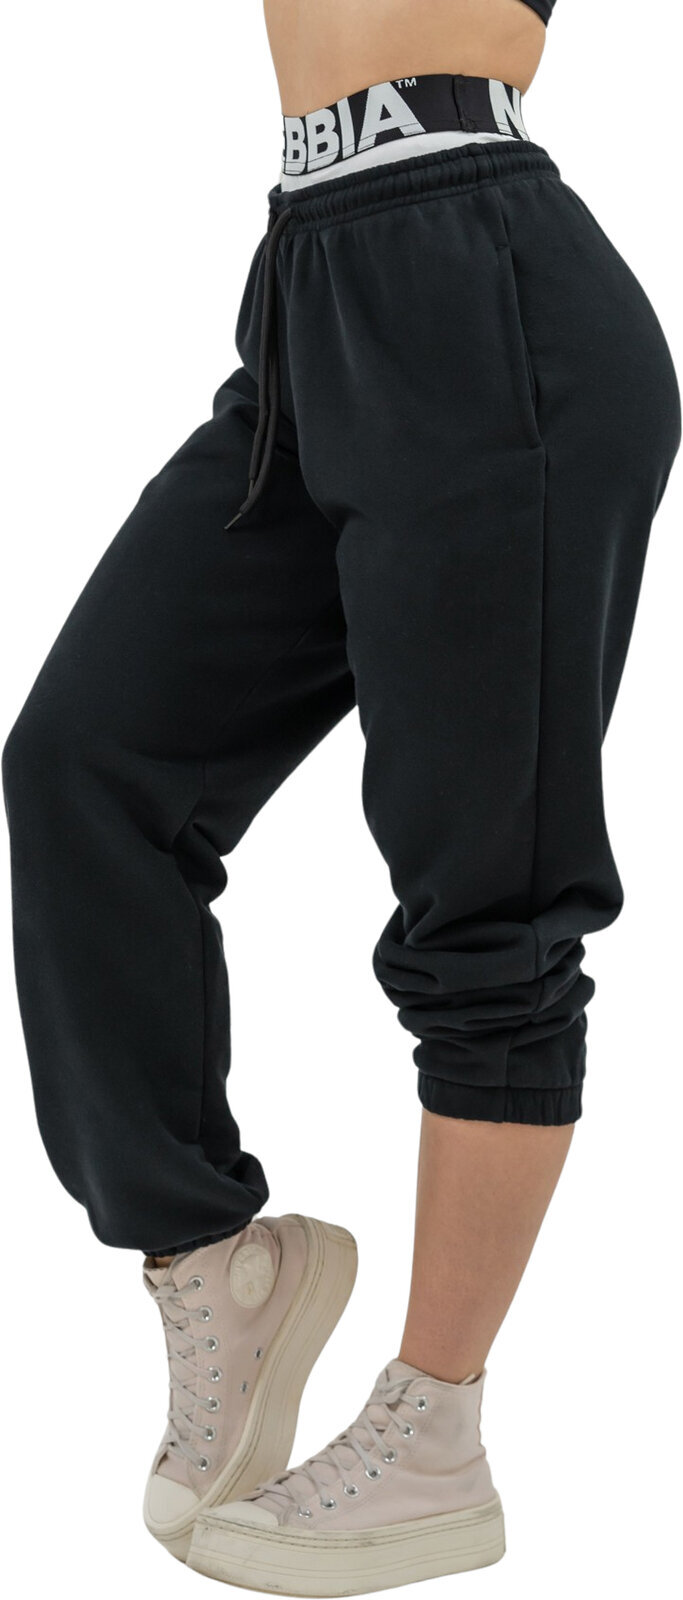 Fitness spodnie Nebbia Fitness Sweatpants Muscle Mommy Black XS Fitness spodnie